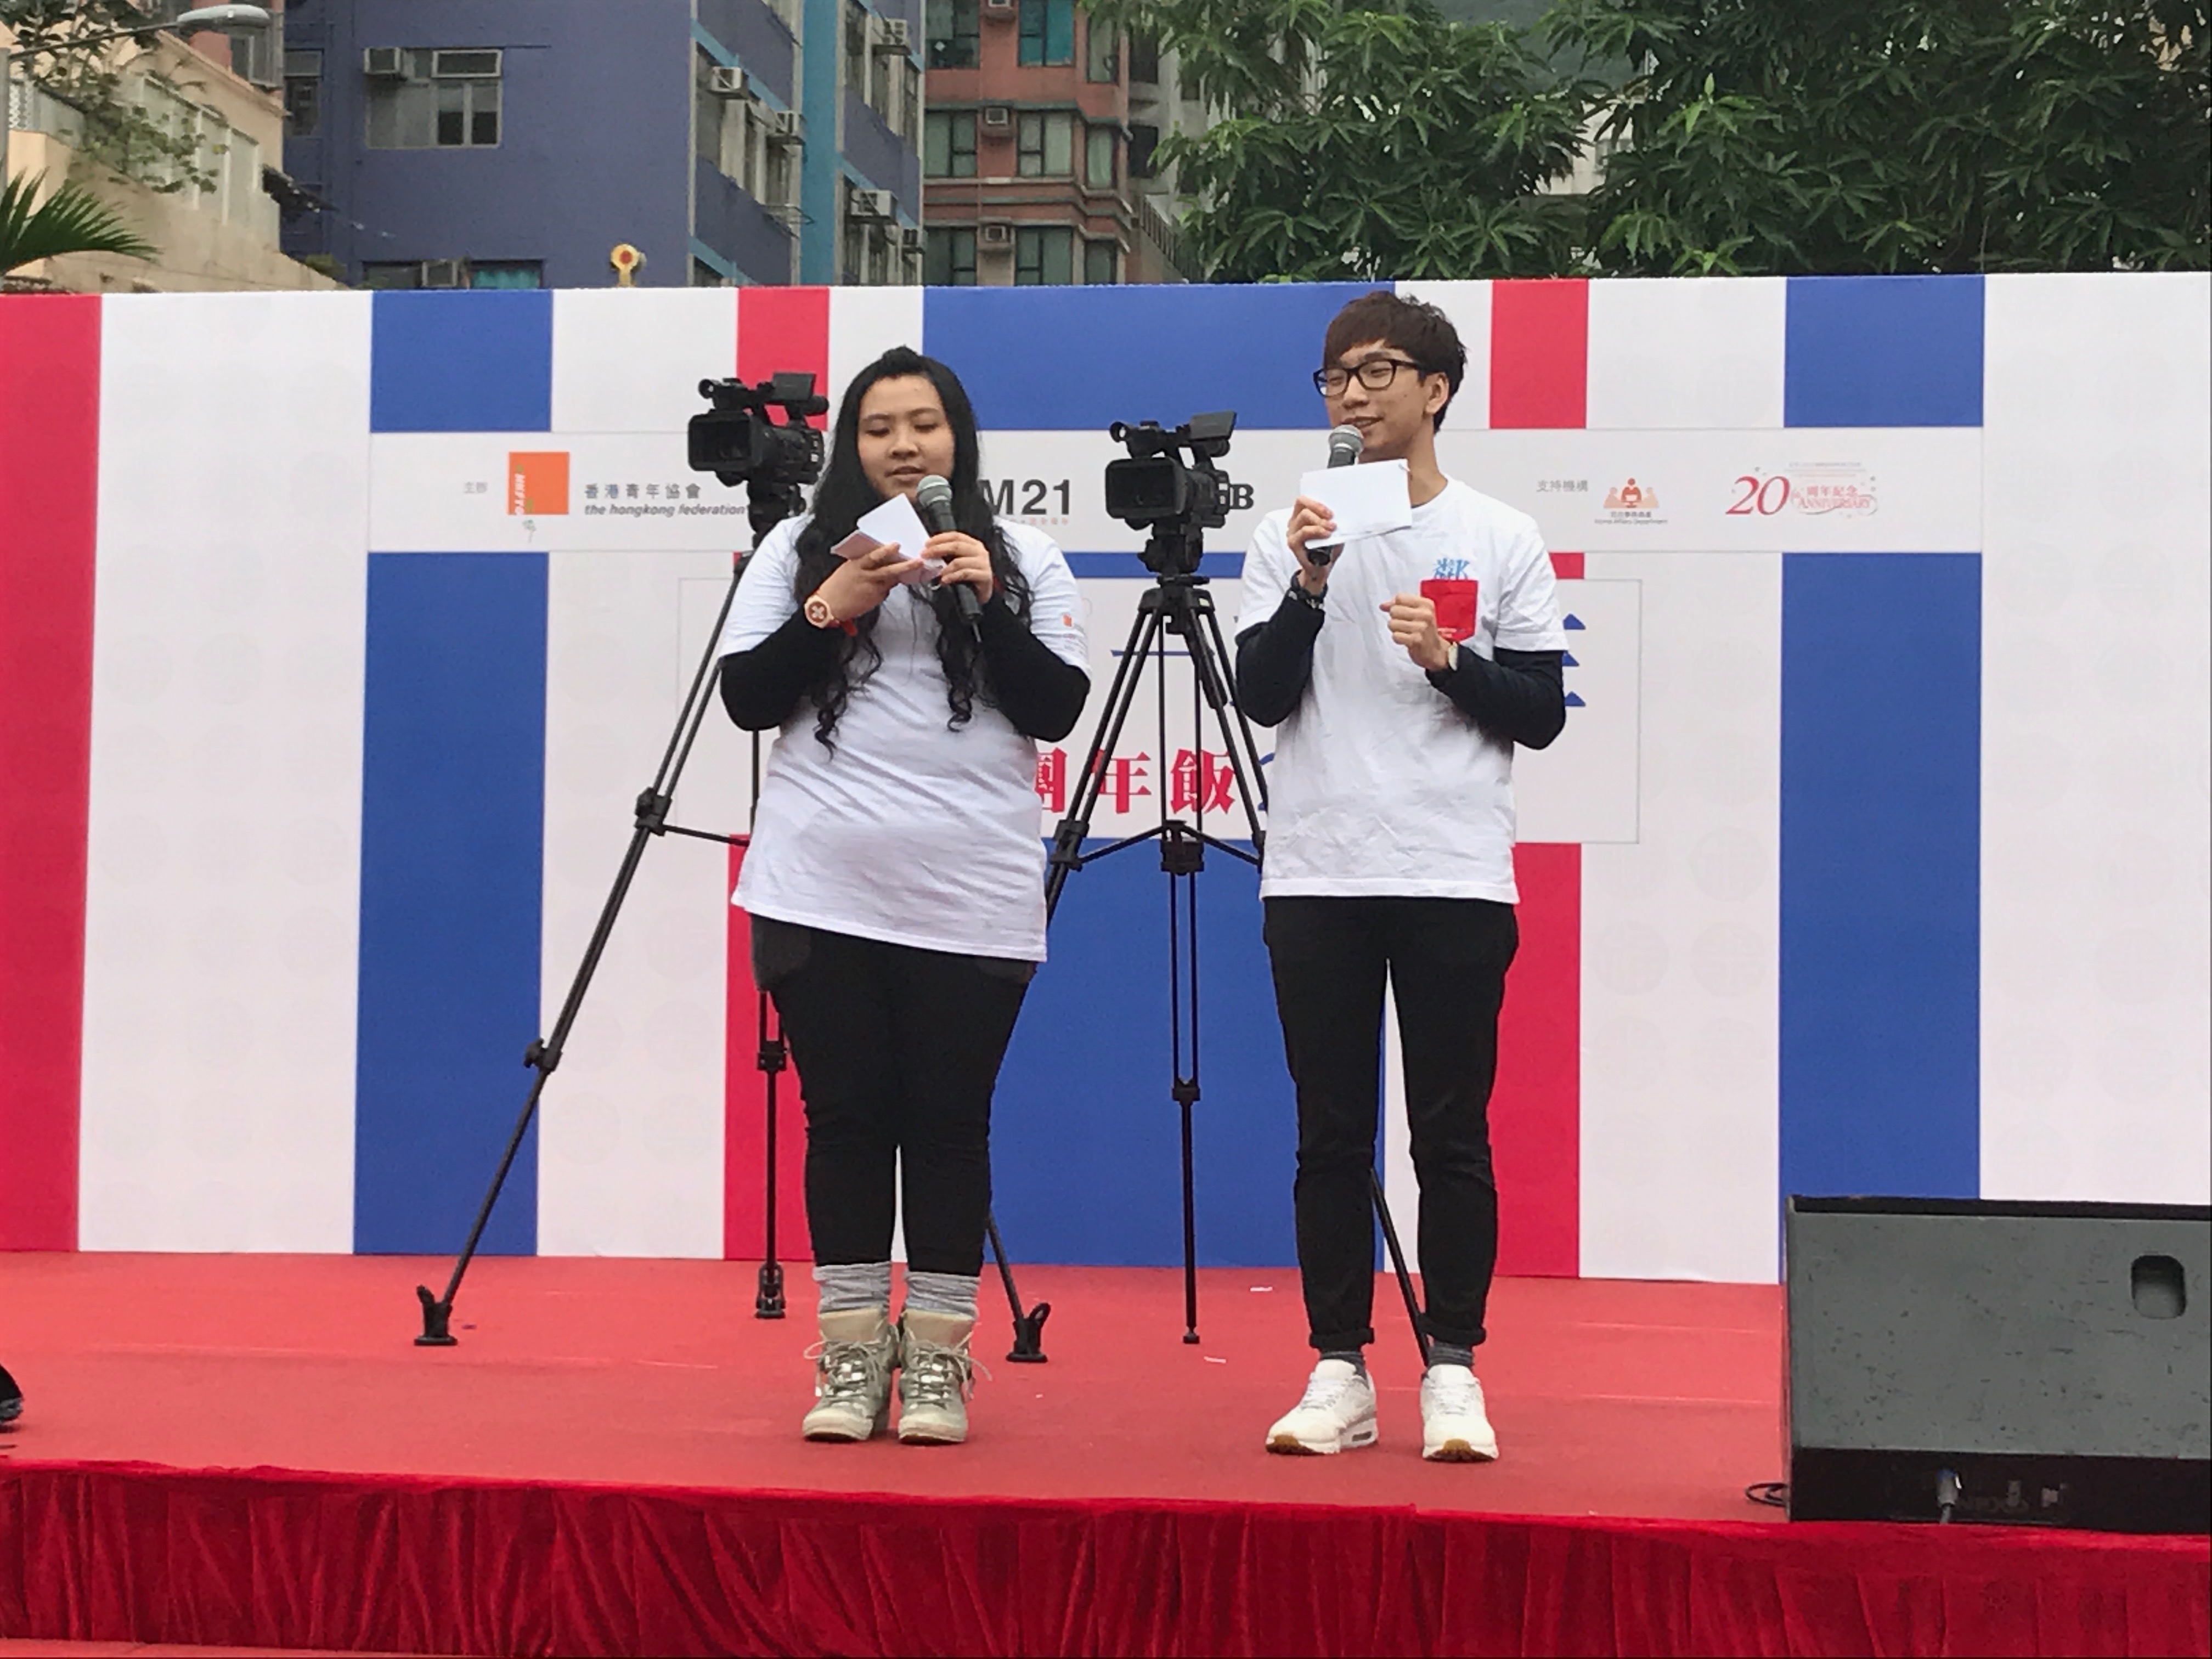 細眼之司儀主持紀錄: 「活動主持」香港青年協會M21媒體空間鄰舍團年飯2017